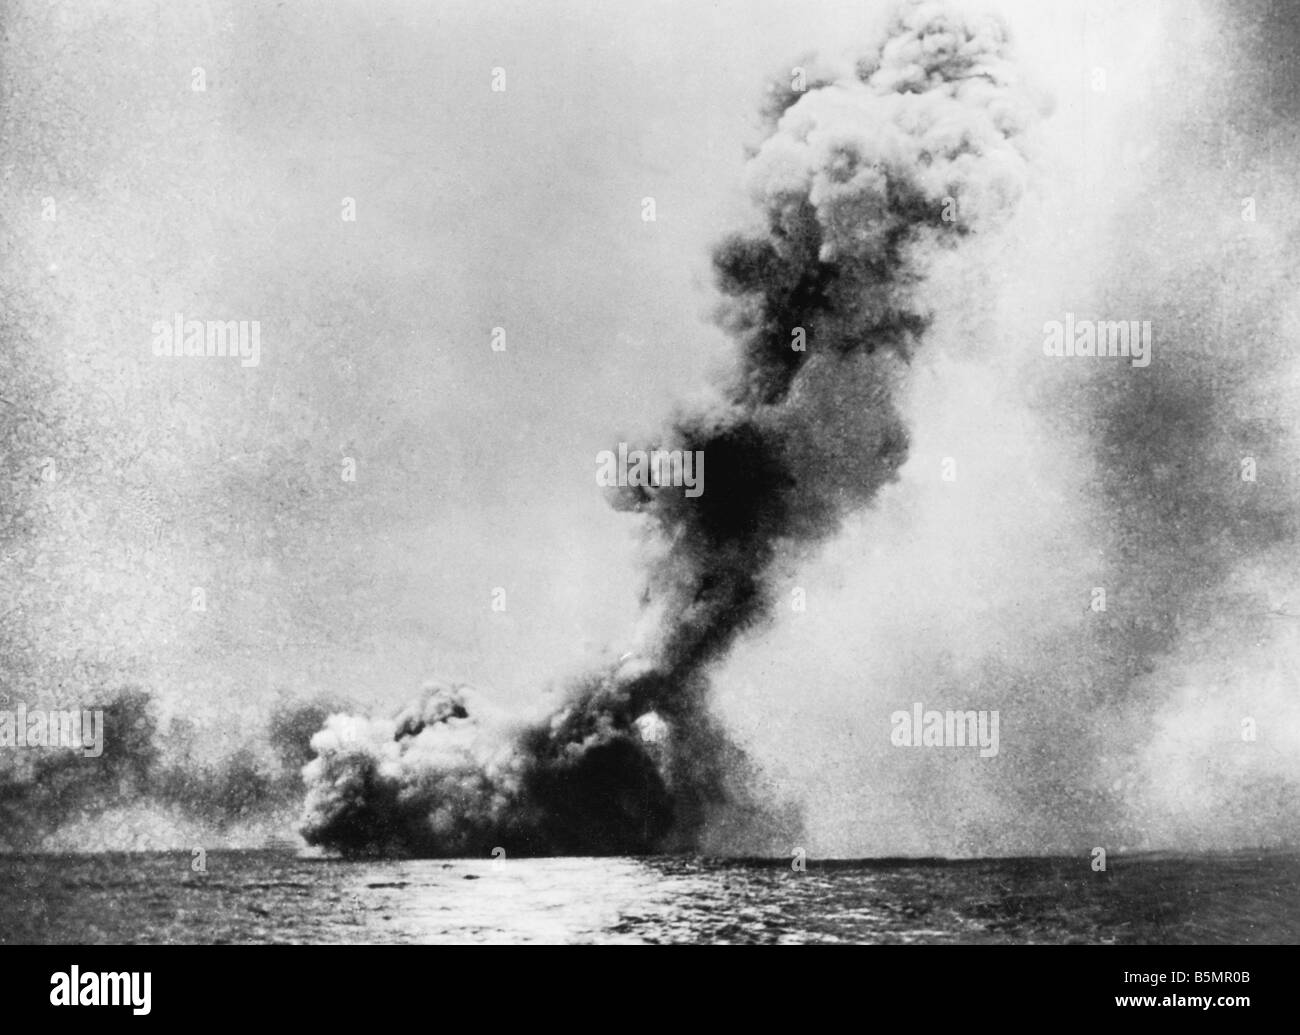 9 1916 5 31 A1 16 e la battaglia dello Jutland 1916 Photo World War 1 1914 18 La battaglia navale dello Jutland Skagerrak 31 5 1 6 1916 Ger Alta Se Foto Stock